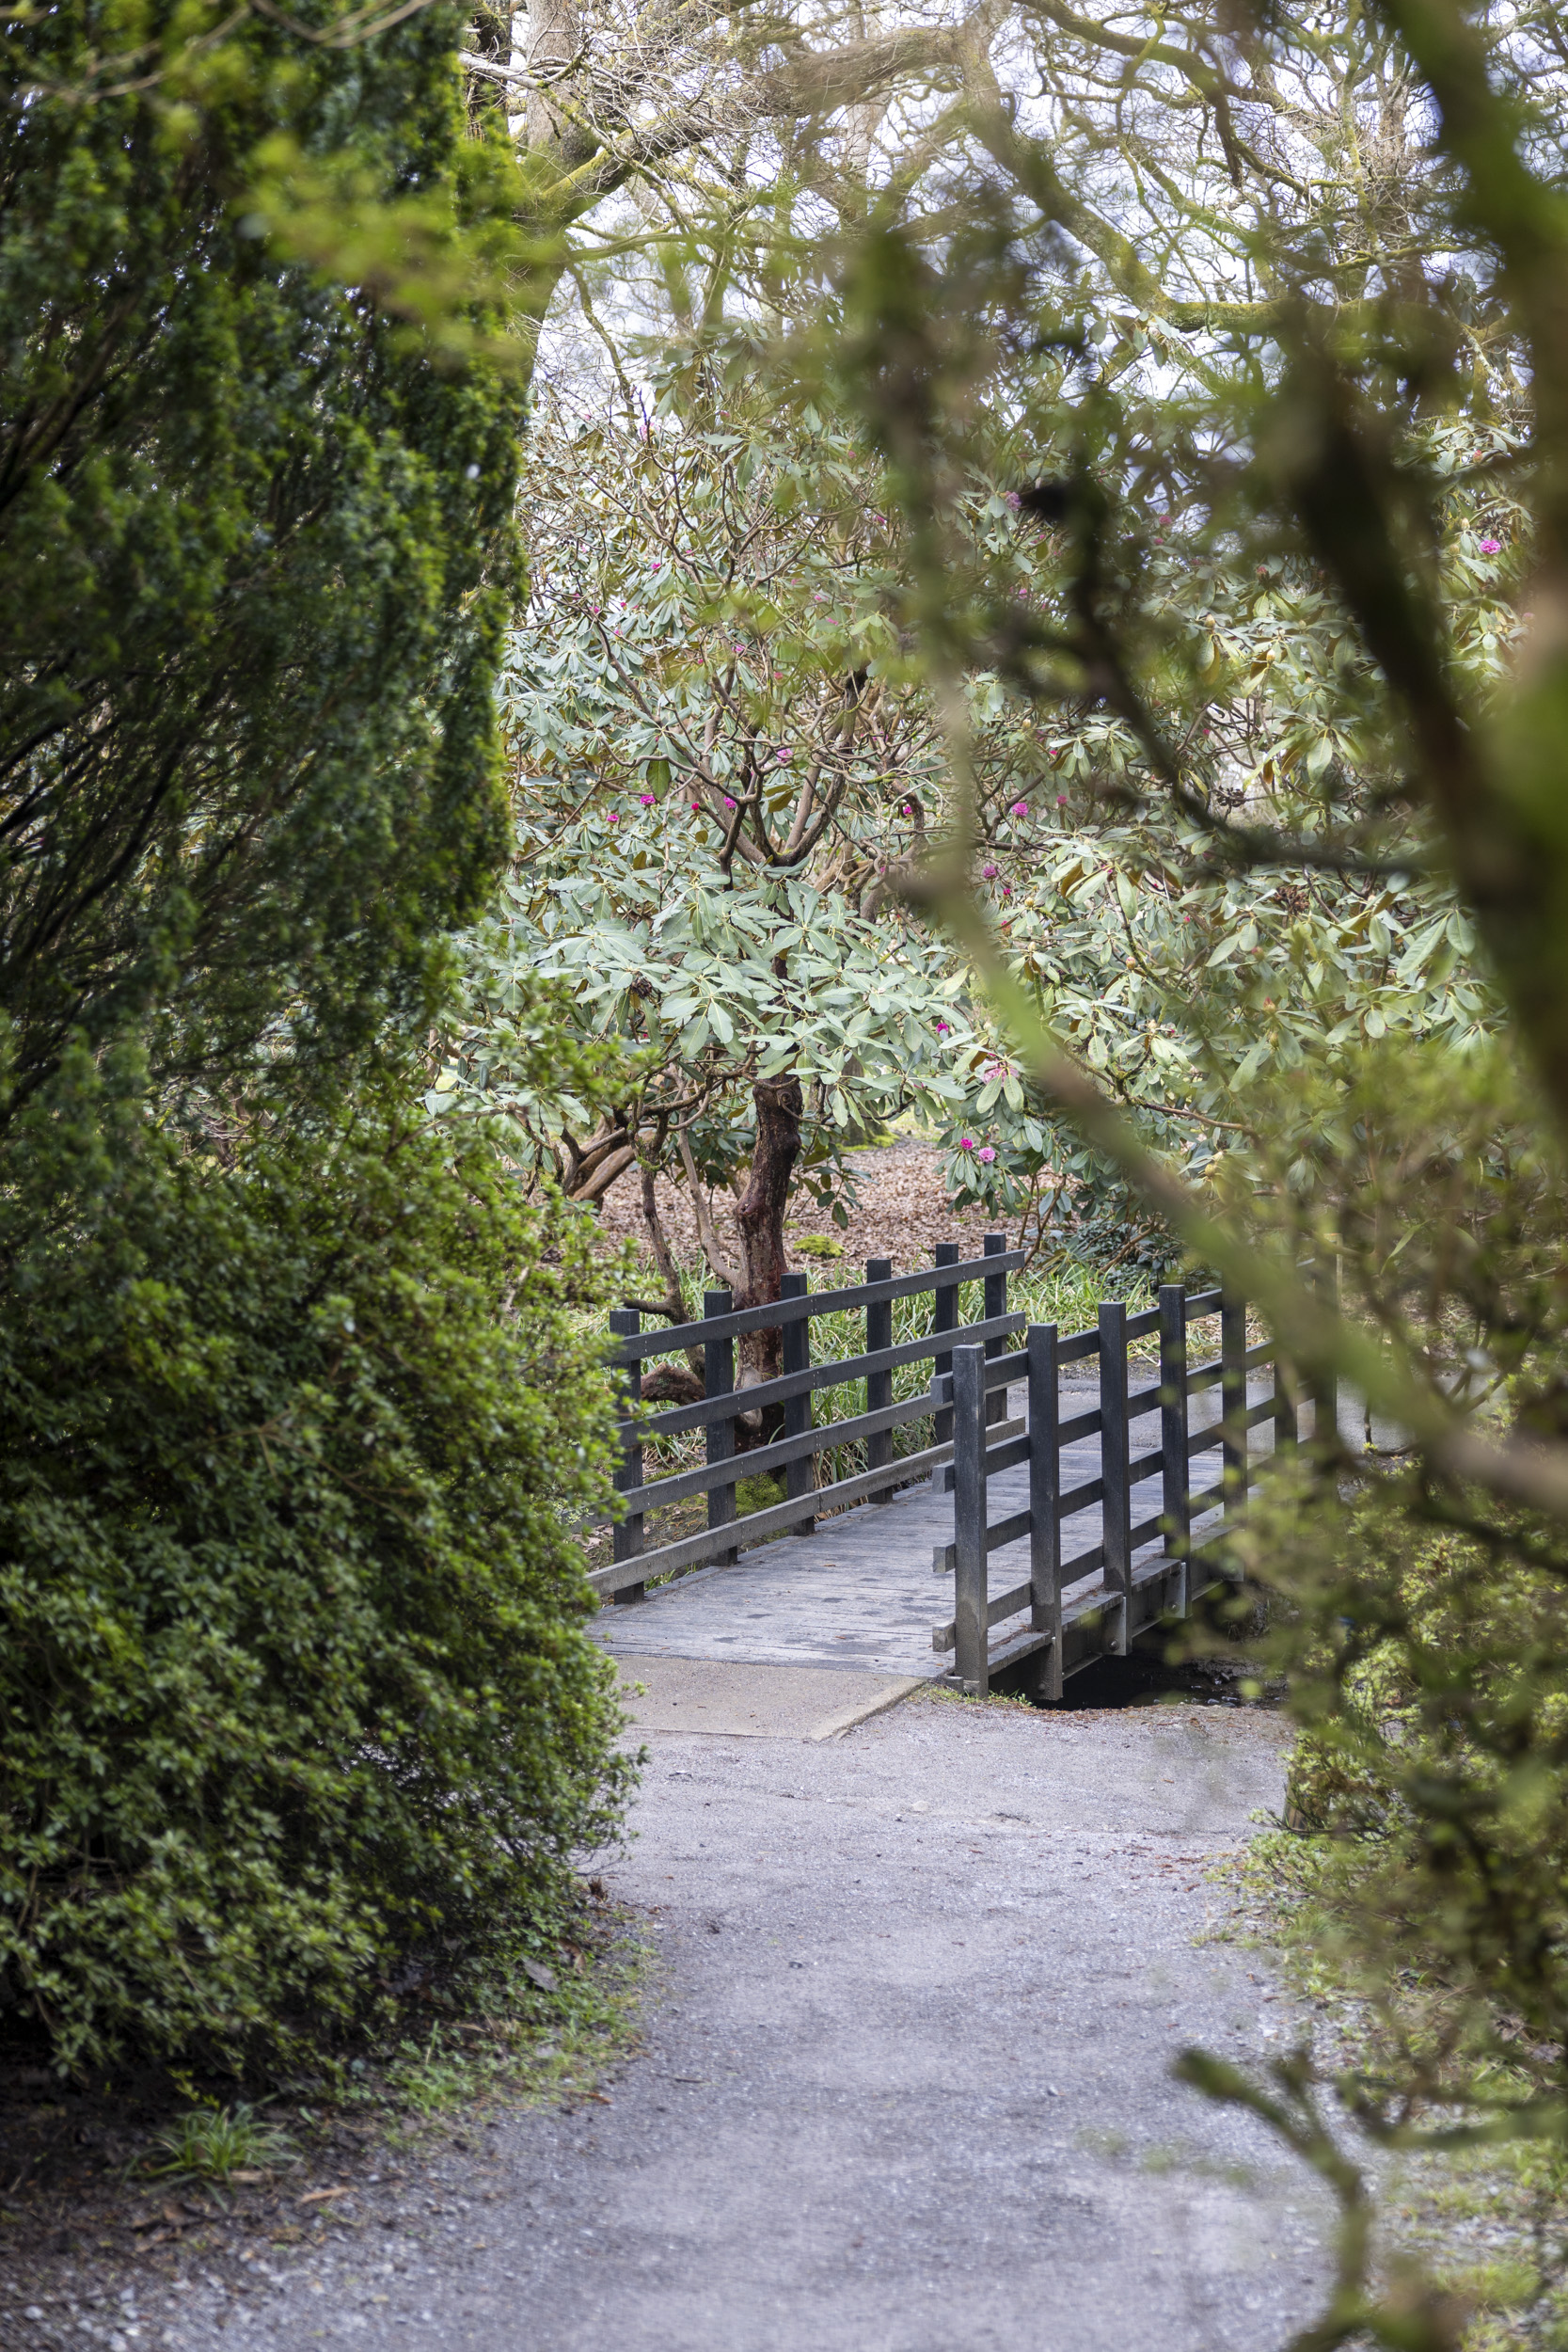 Canon EOS R8 sample image of a garden and small footbridge